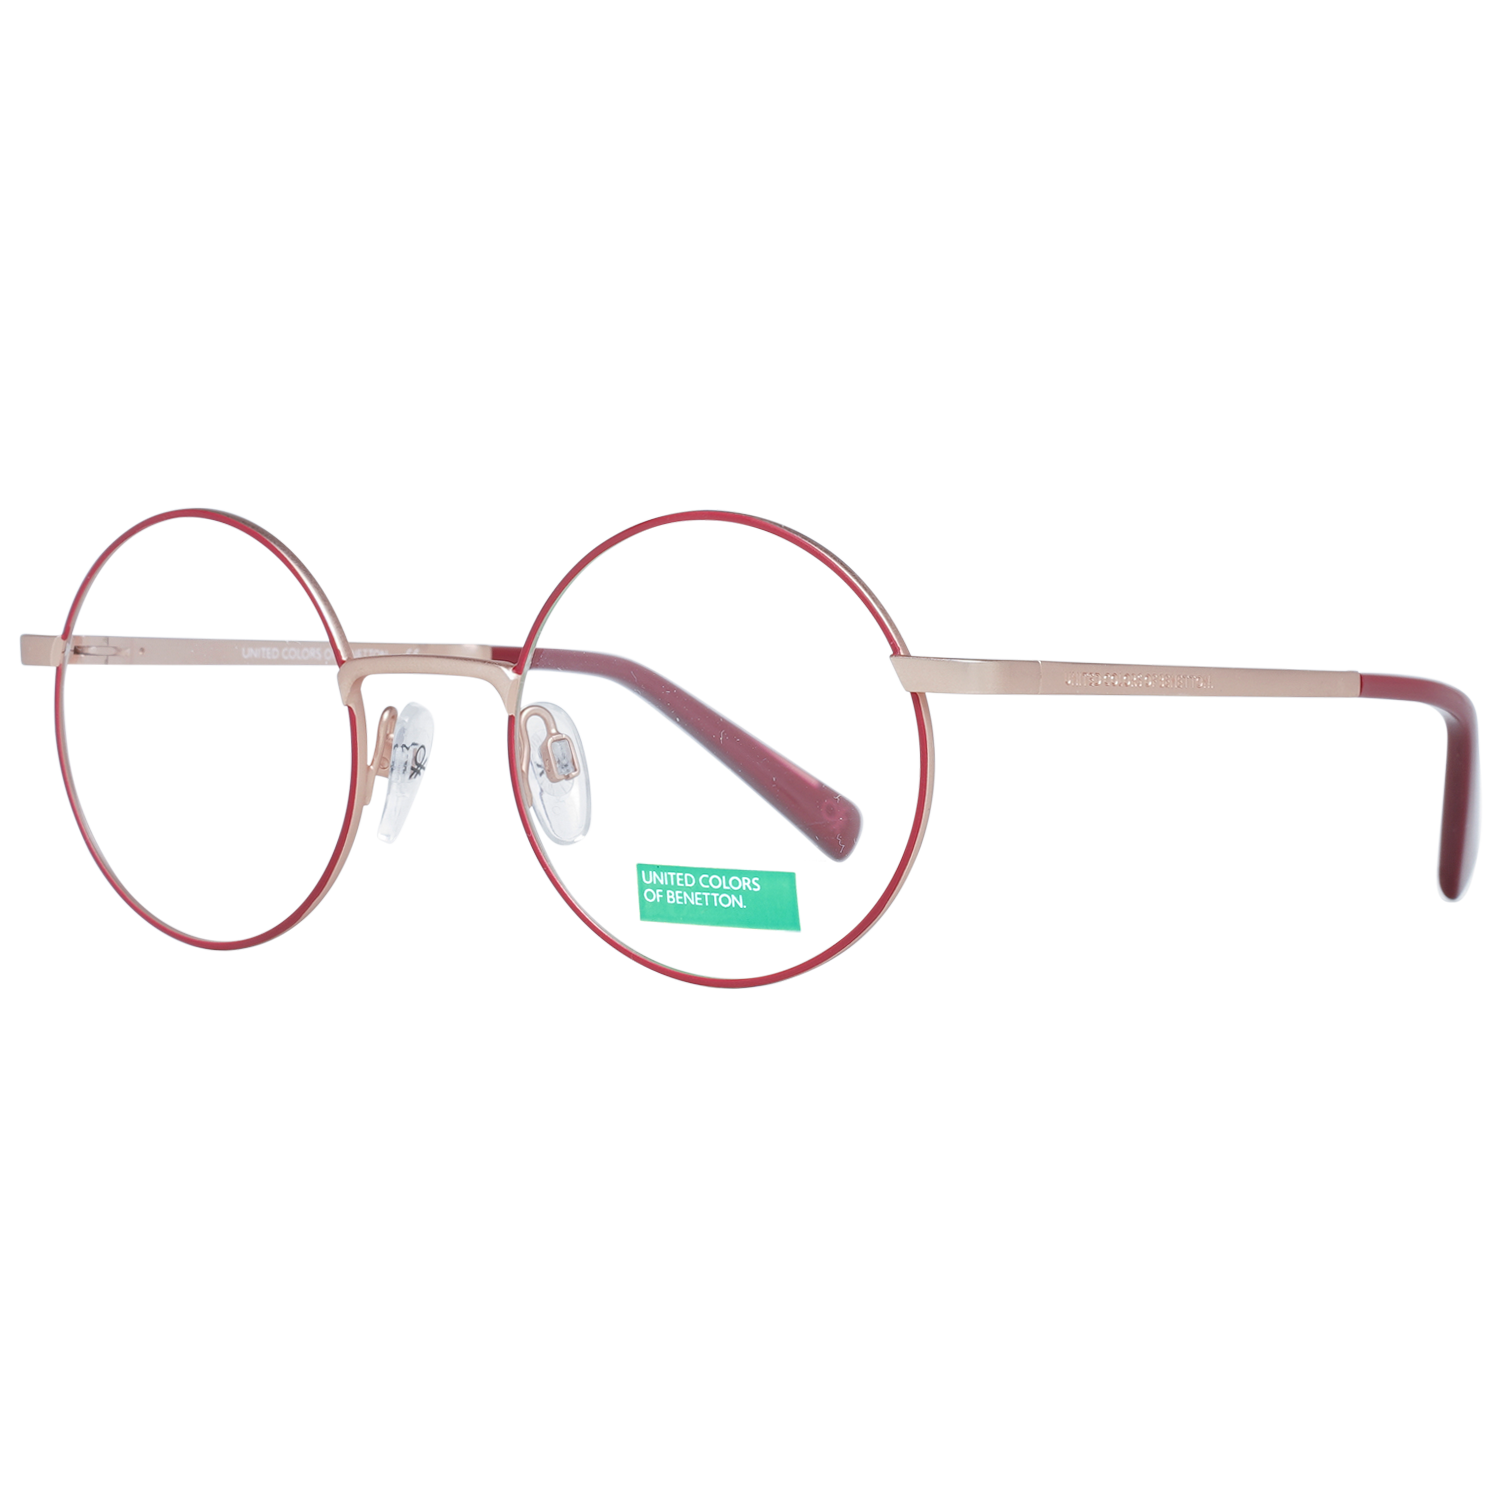 Benetton Frames Benetton Glasses Frames BEO3005 206 48 Eyeglasses Eyewear UK USA Australia 